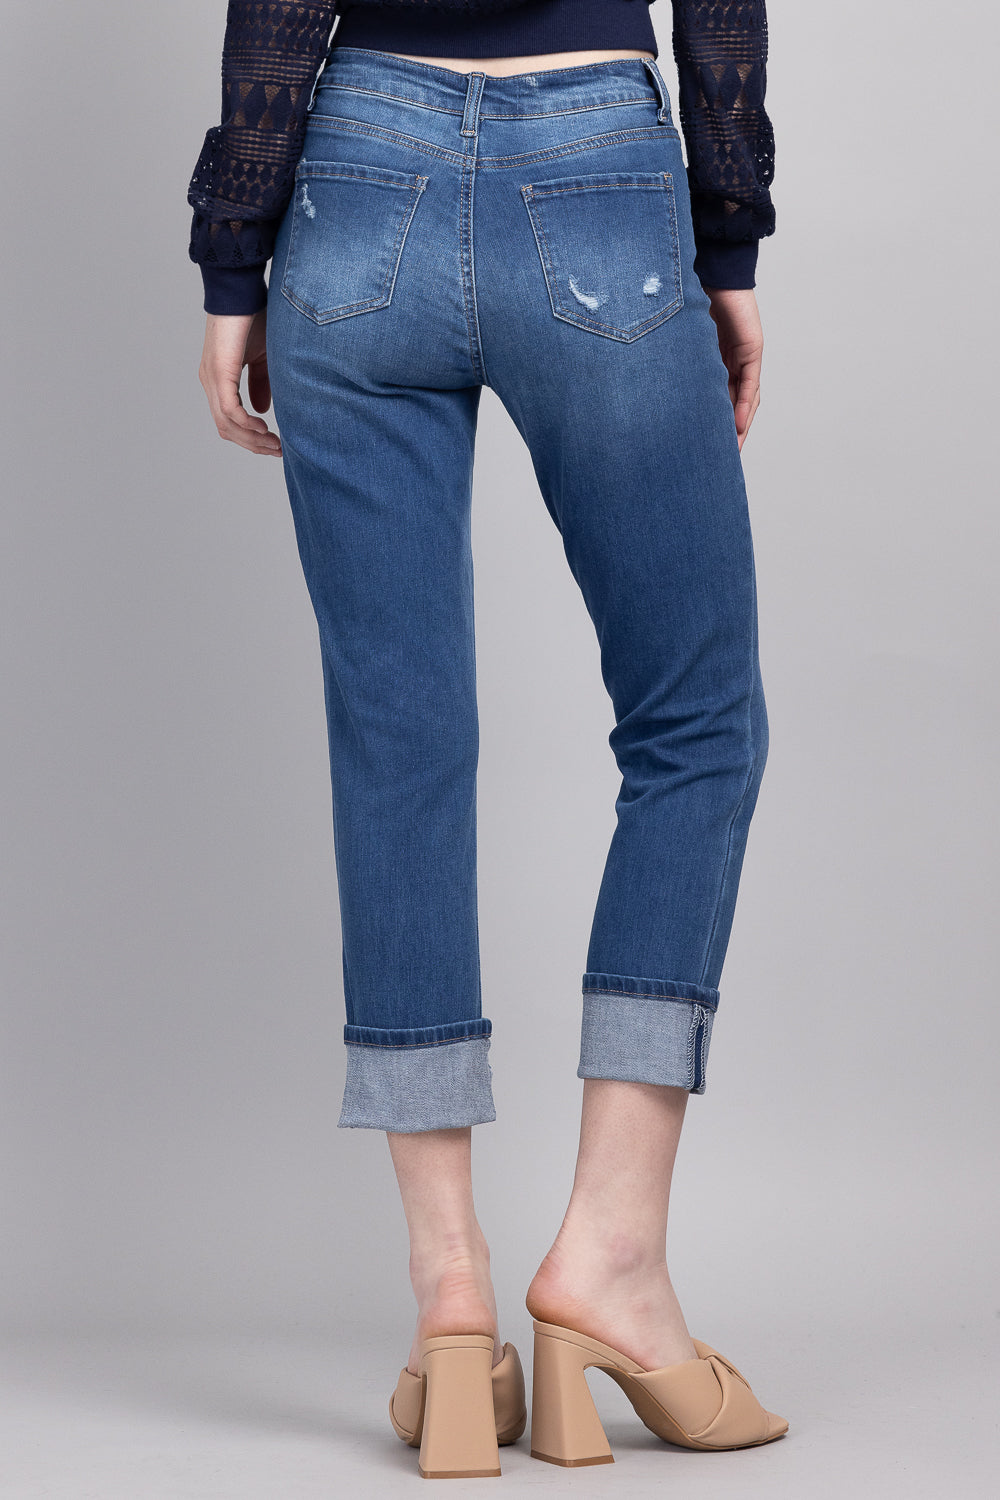 Jeans ajustados cortos de tiro alto con puños anchos